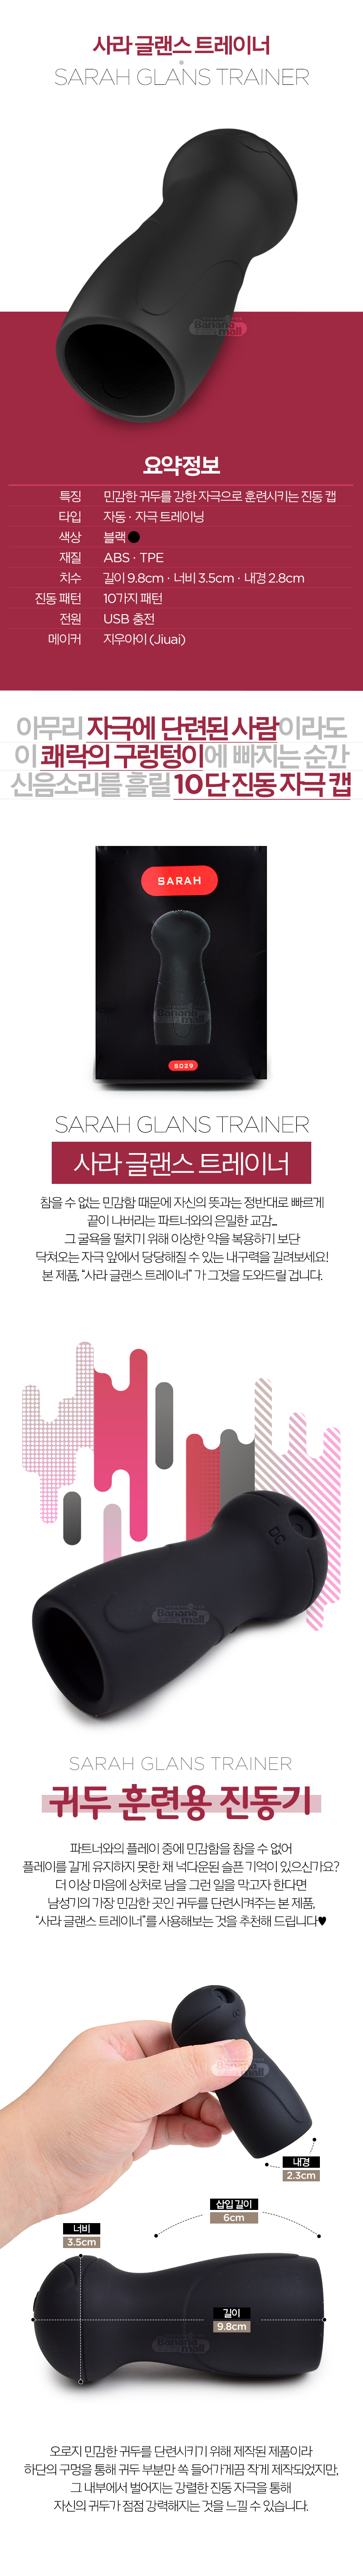 [조루 단련] 사라 글랜스 트레이너(Sarah Glans Trainer)